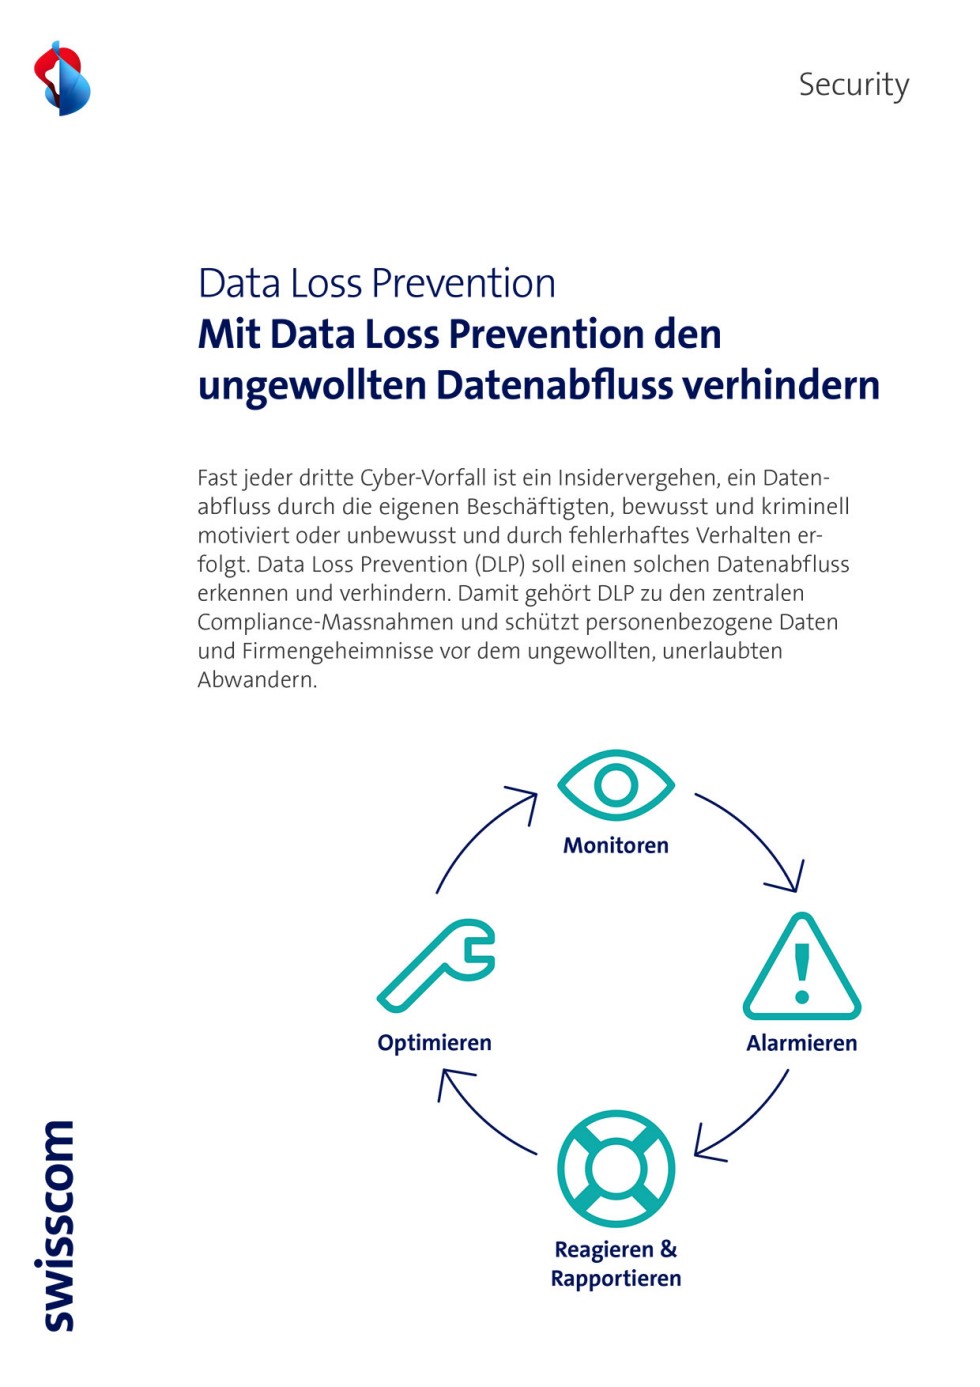 Titelbild des Infopaketes: Data Loss Prevention